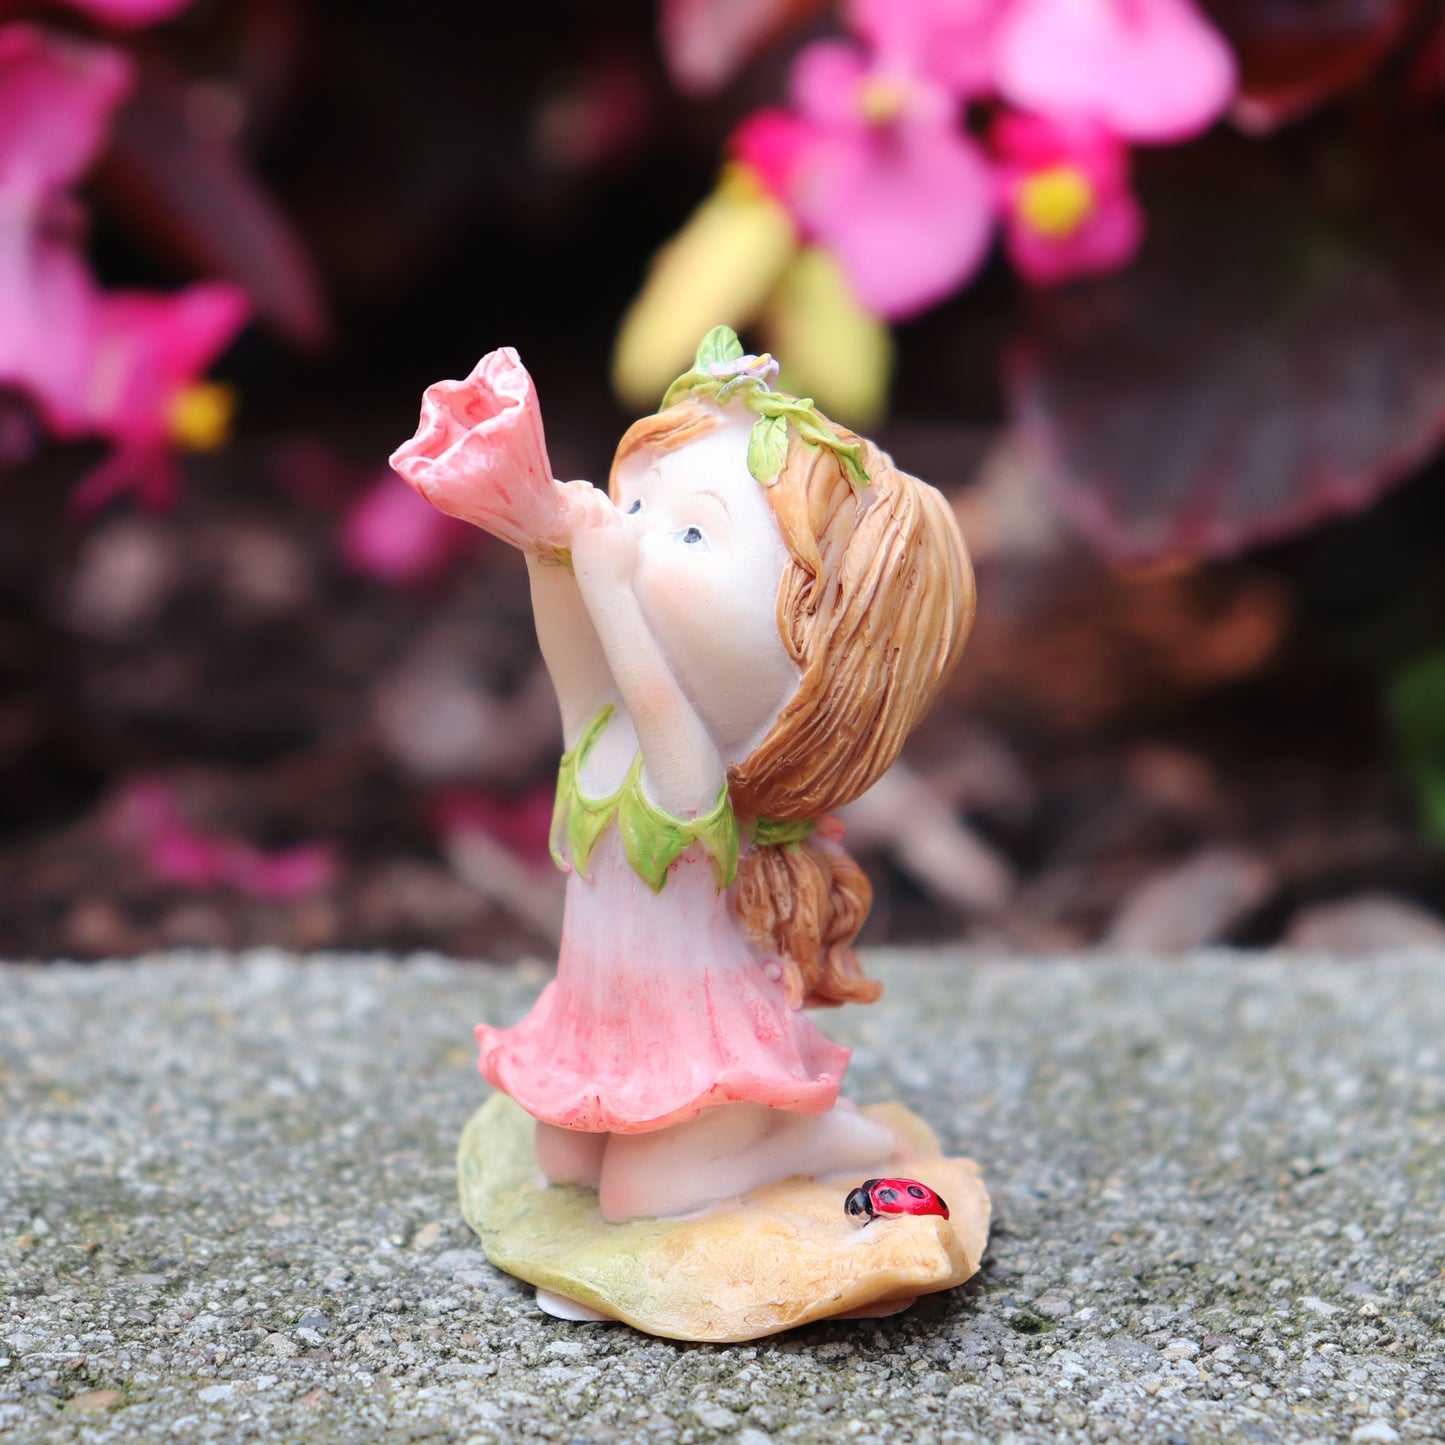 Little Fairy Blowing Flower